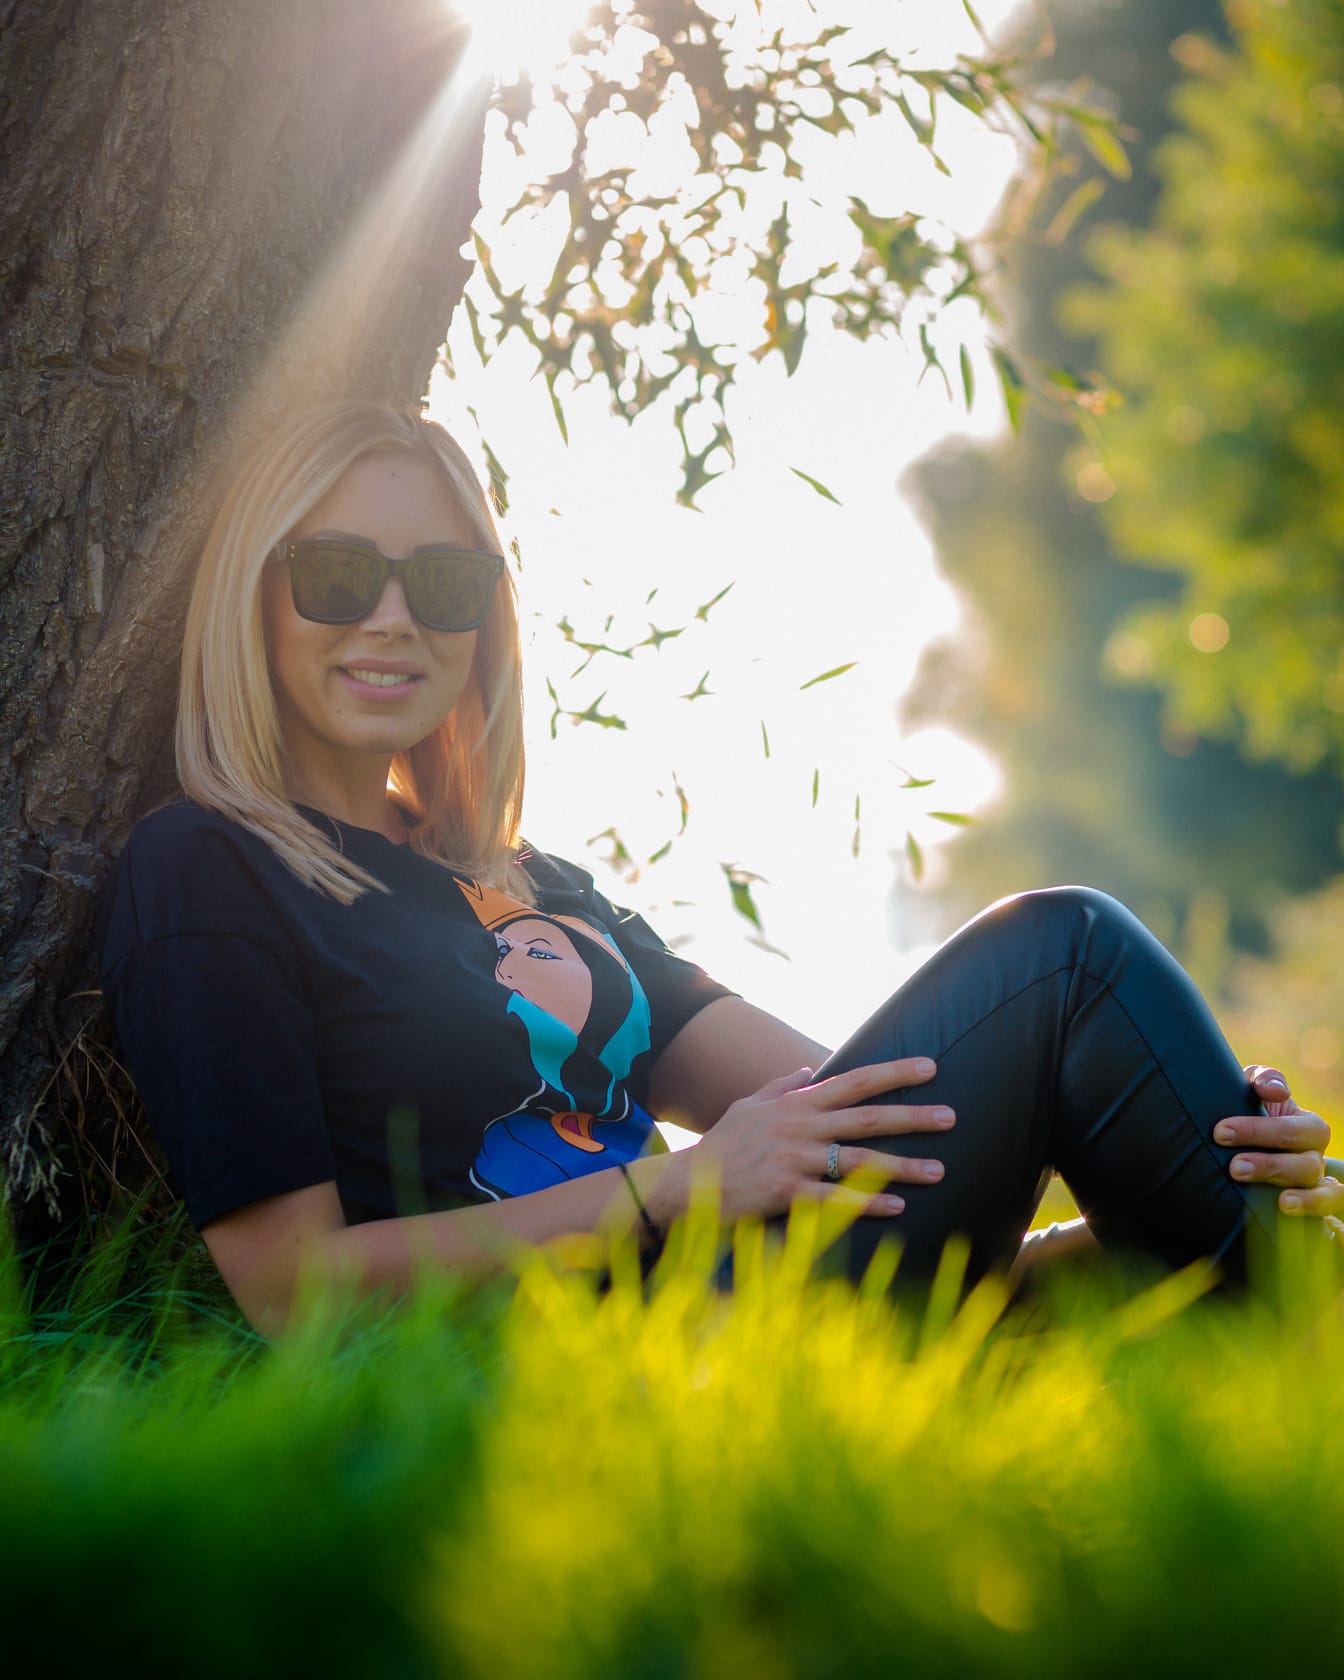 Случайный портрет женщины со светлыми волосами, сидящей под стволом дерева